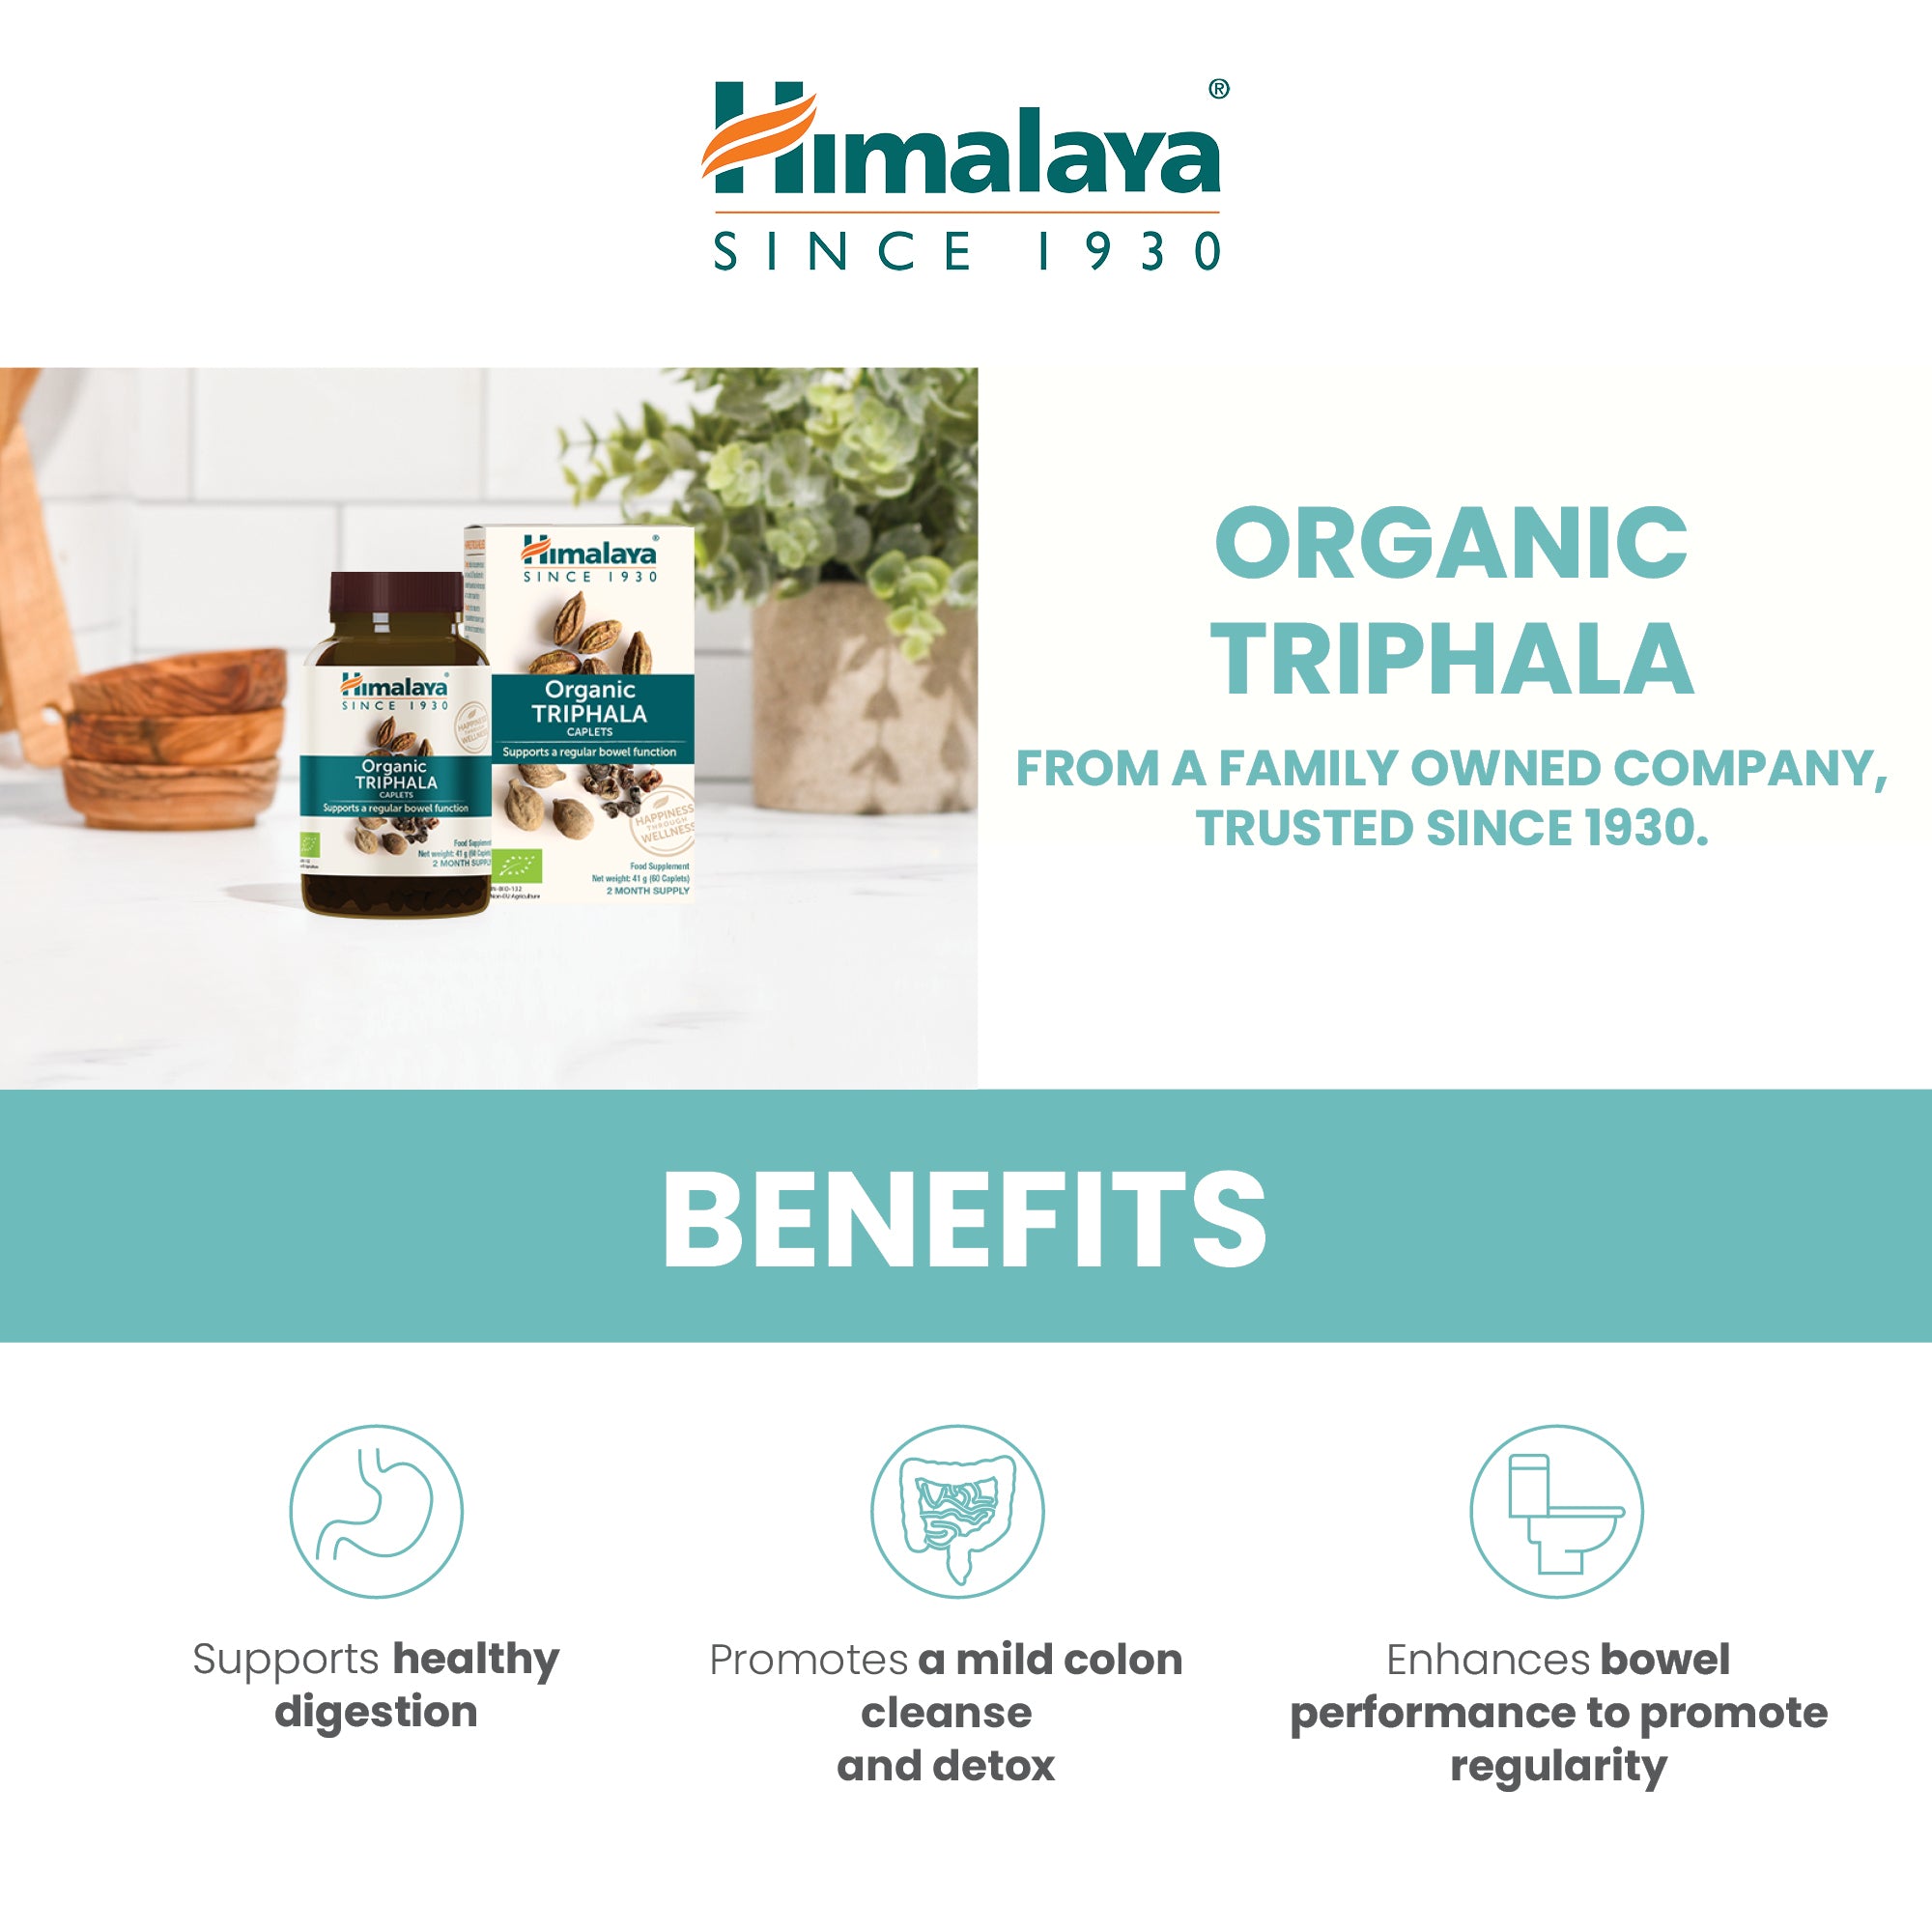 Himalaya Organic Triphala